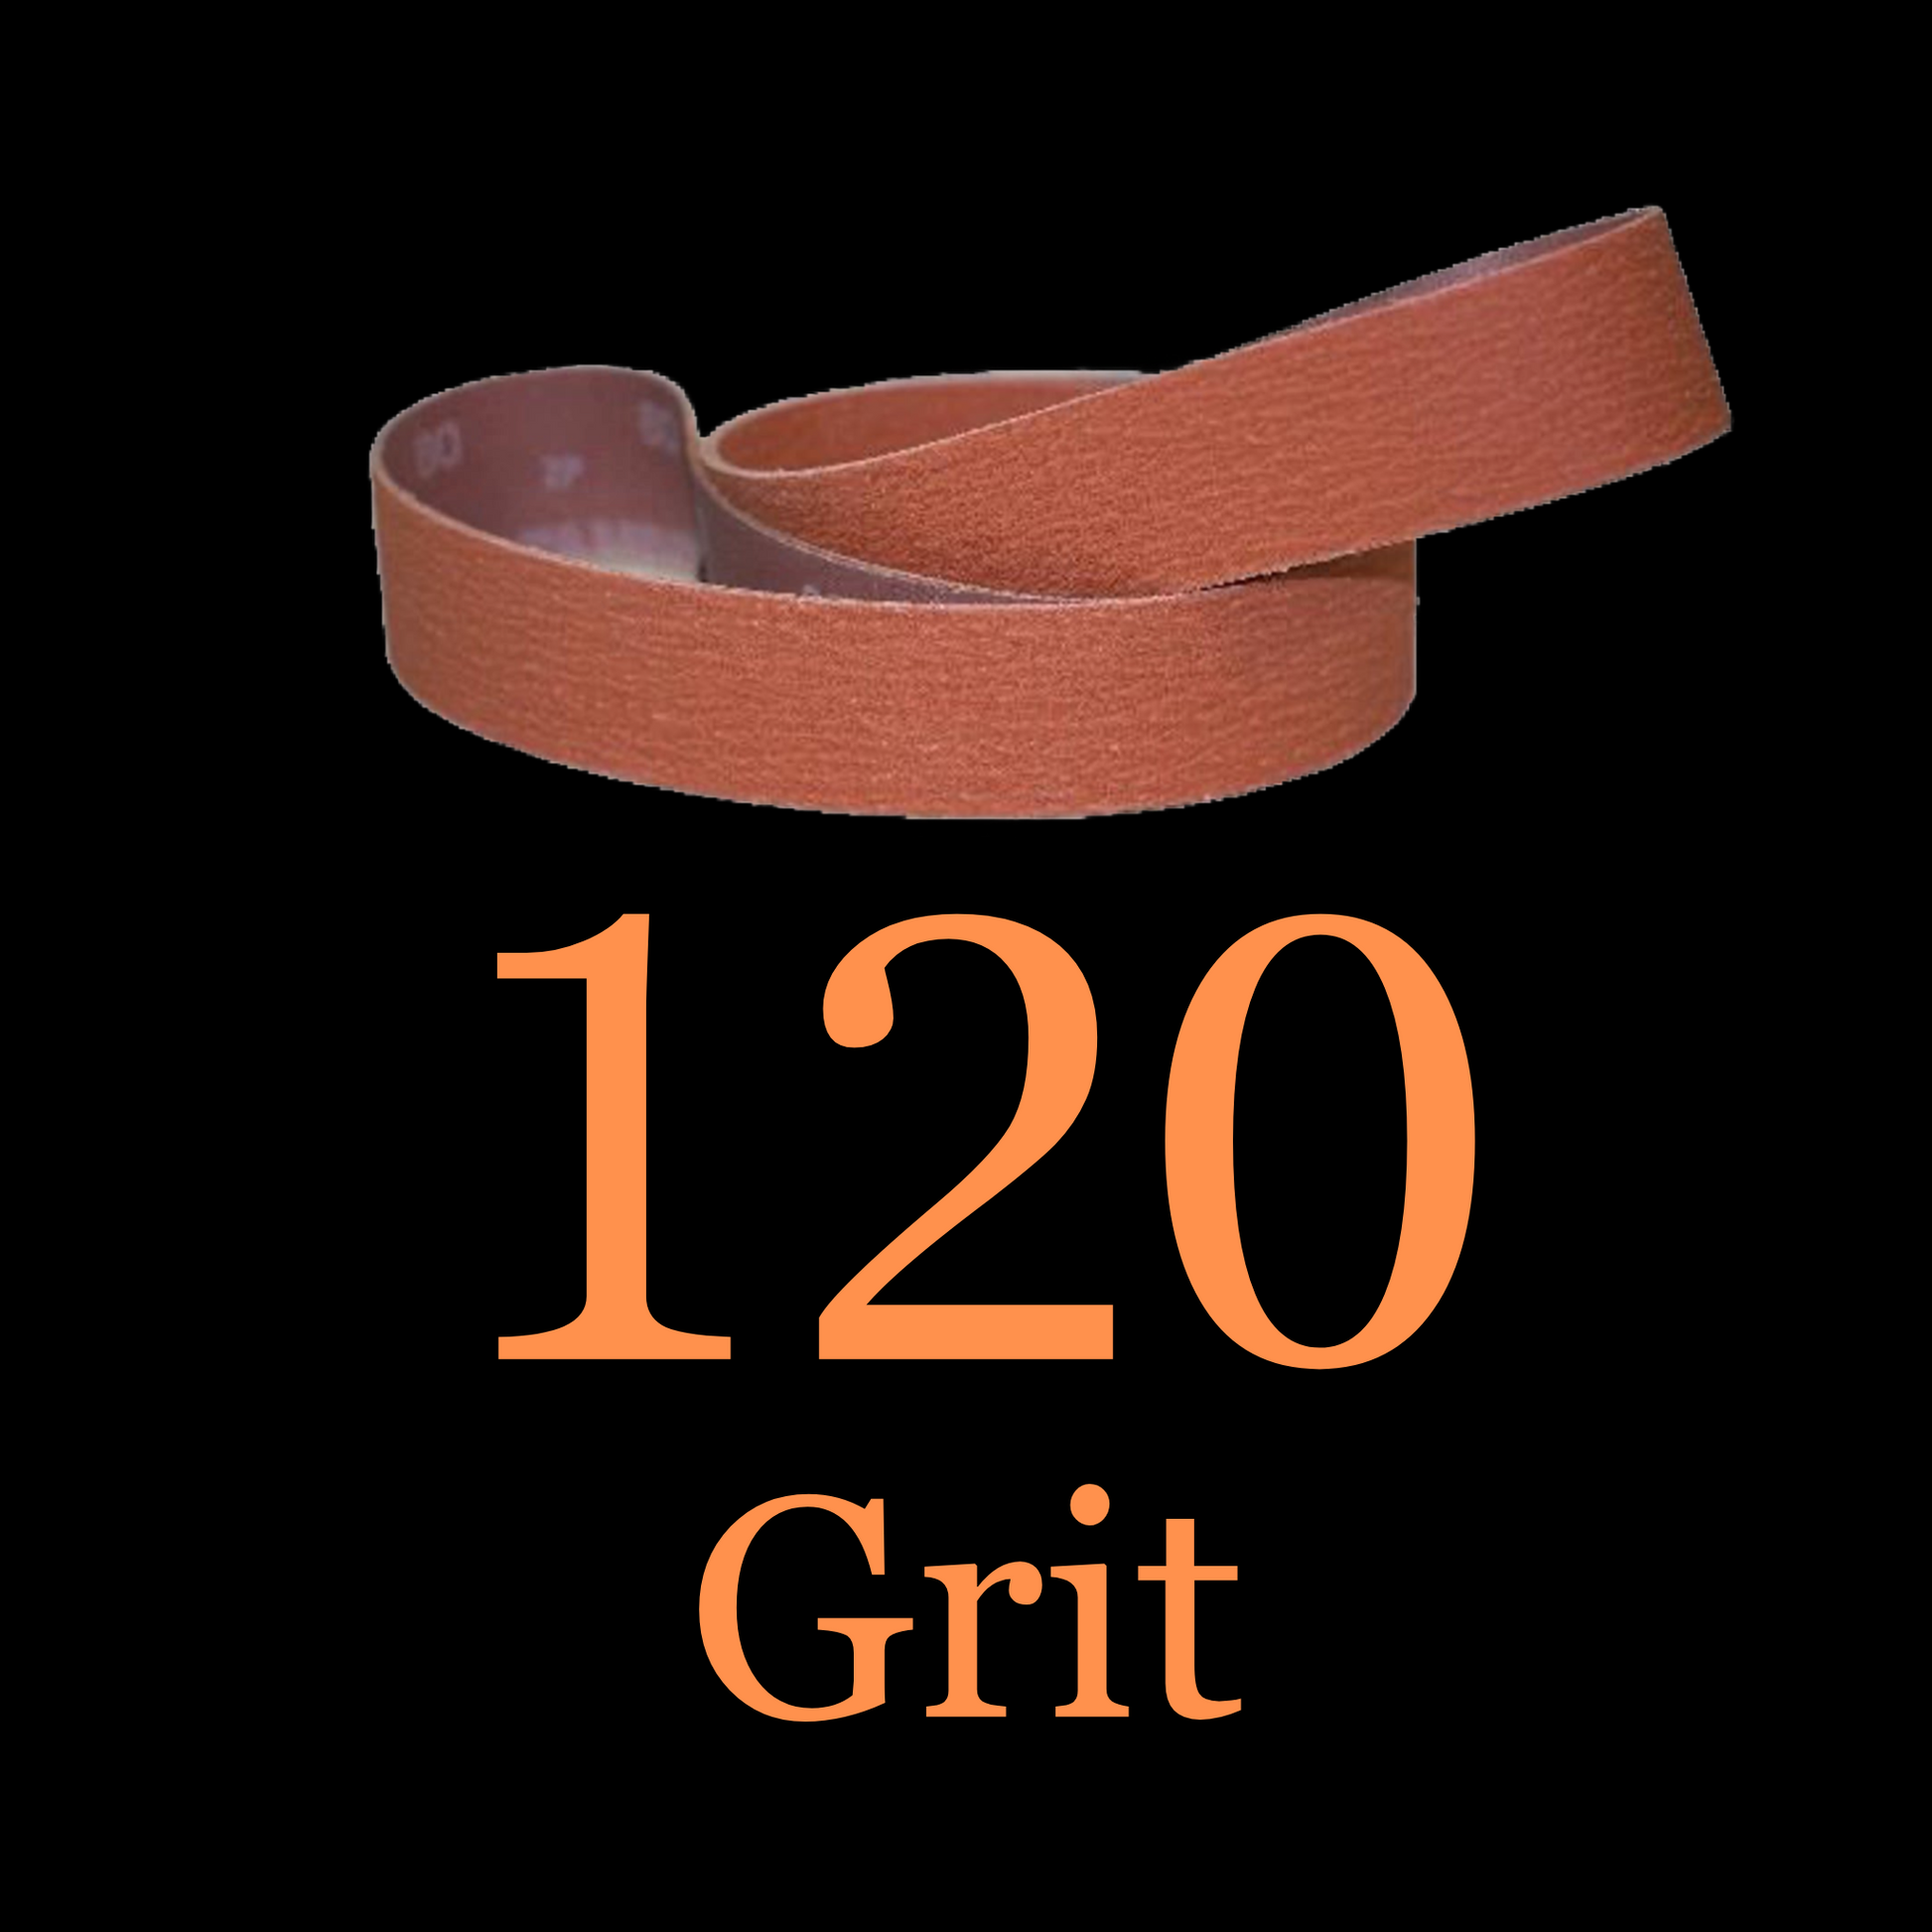 2” x 48” Ceramic Blaze Grinder Belt 120 Grit